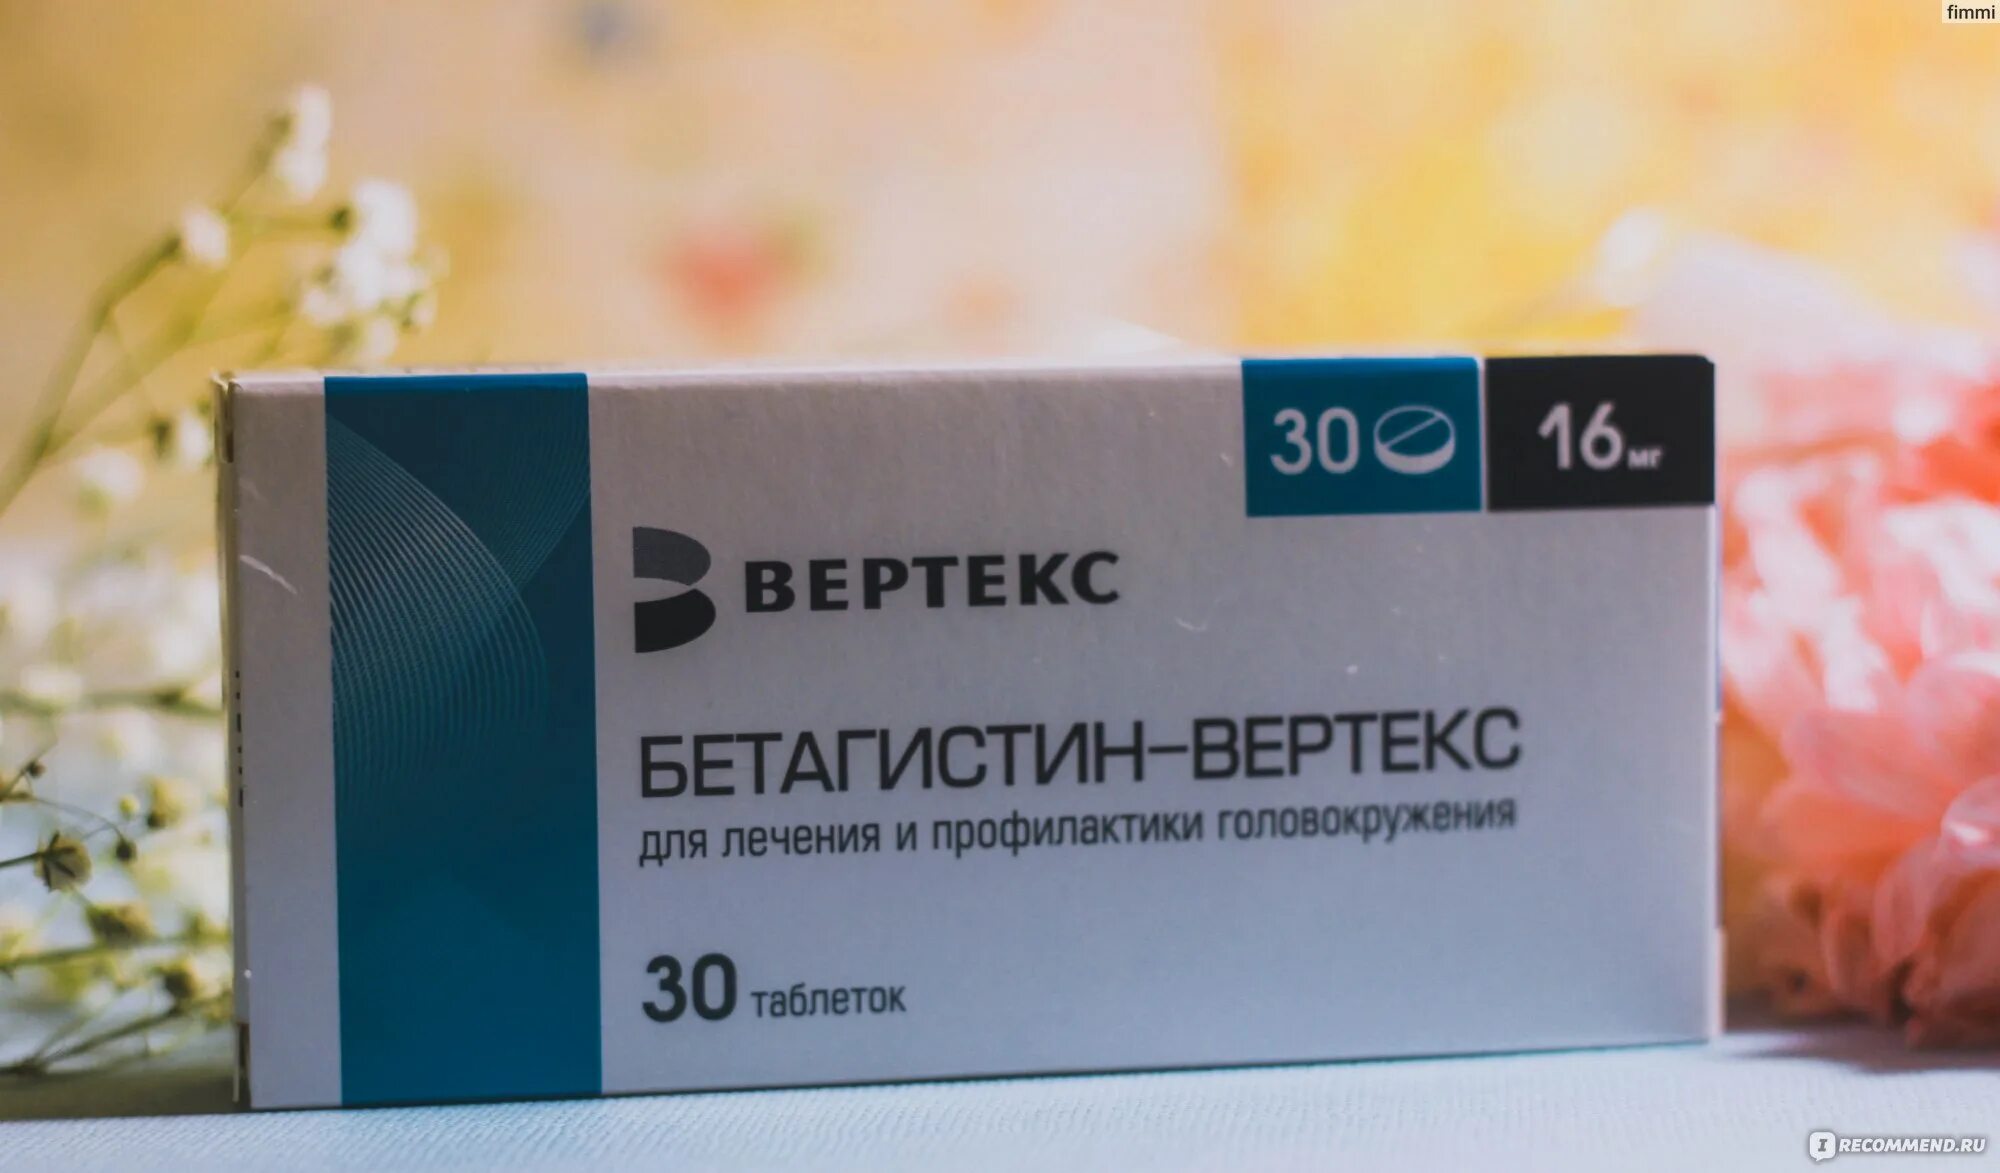 Бетагистин Вертекс 24 мг. Препарат от головокружения таблетки Бетагистин. Препарат от головокружения Бетагистин. Лекарство Бетагистин верте. Эффективные таблетки от головокружения